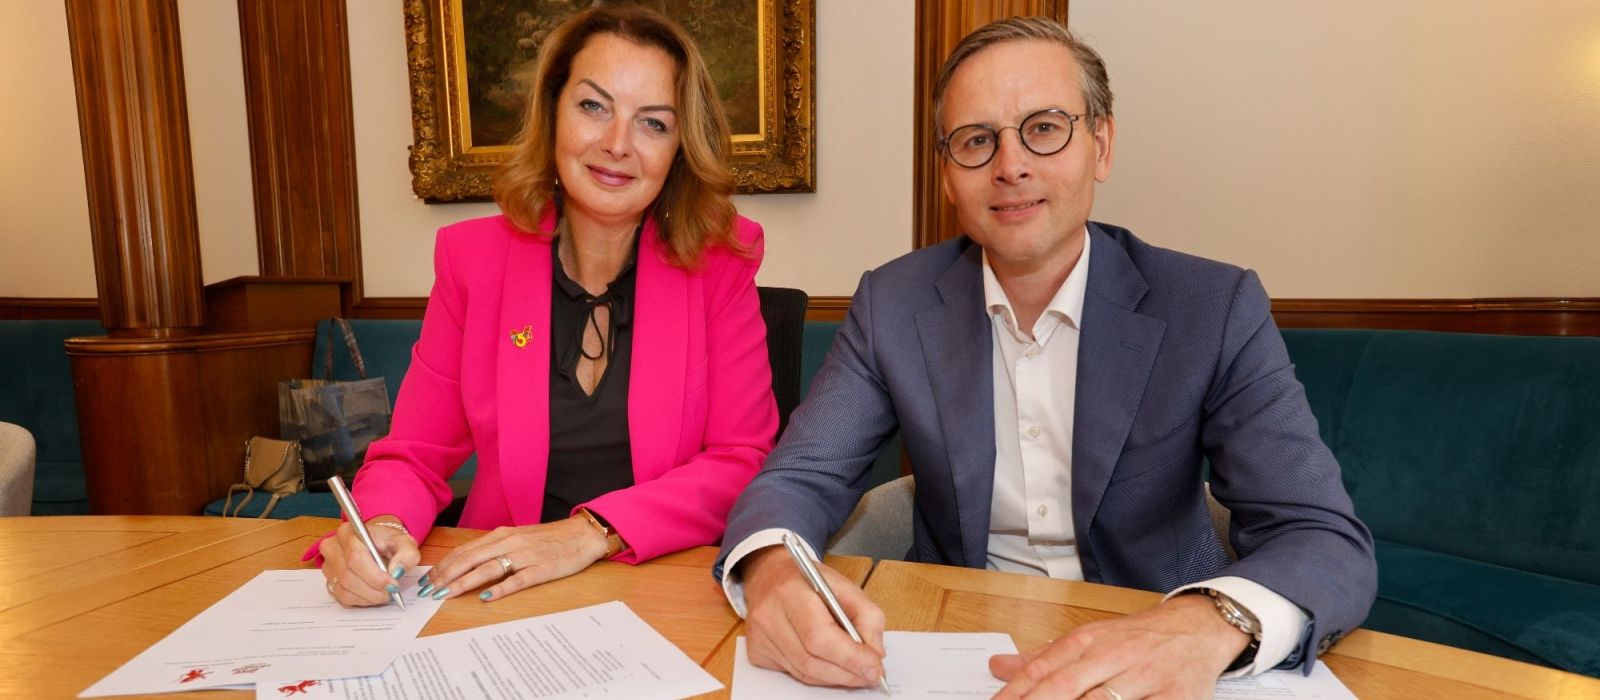 Ondertekening van samenwerkingsovereenkomst Erasmusplein